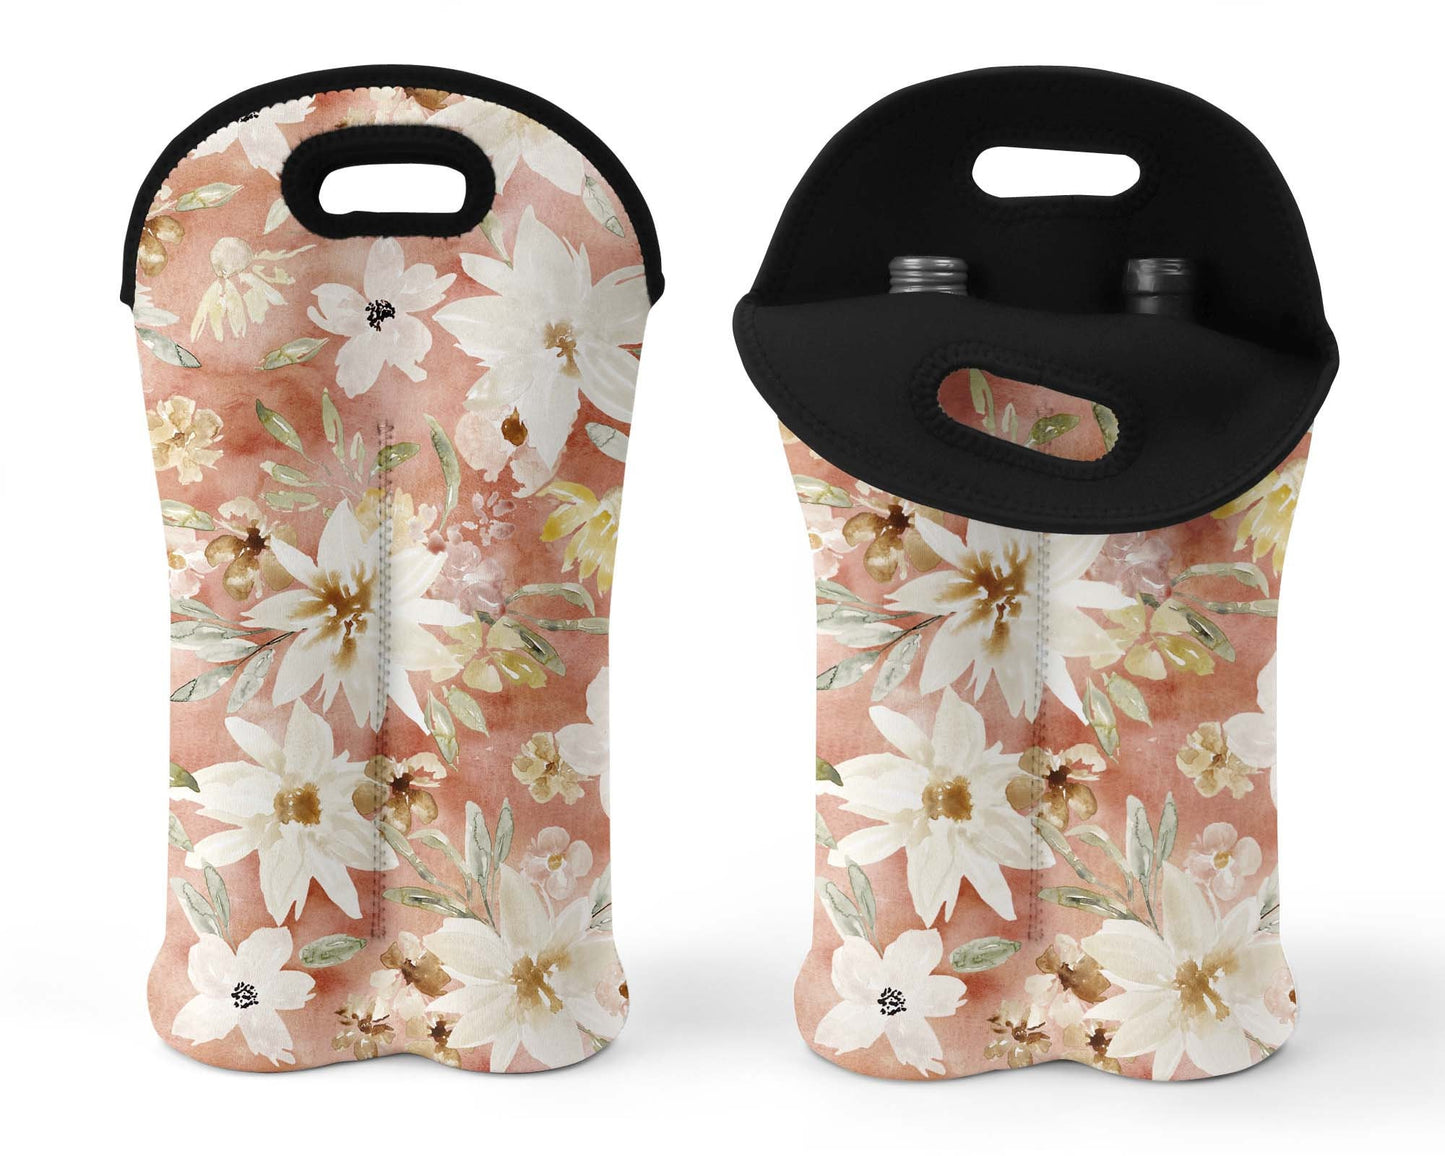 Double Wine Bag Sublimation Design - Wine Gift Bag File - Hostess Gift Sublimation Design - Digital Download - Floral Wine Bag file